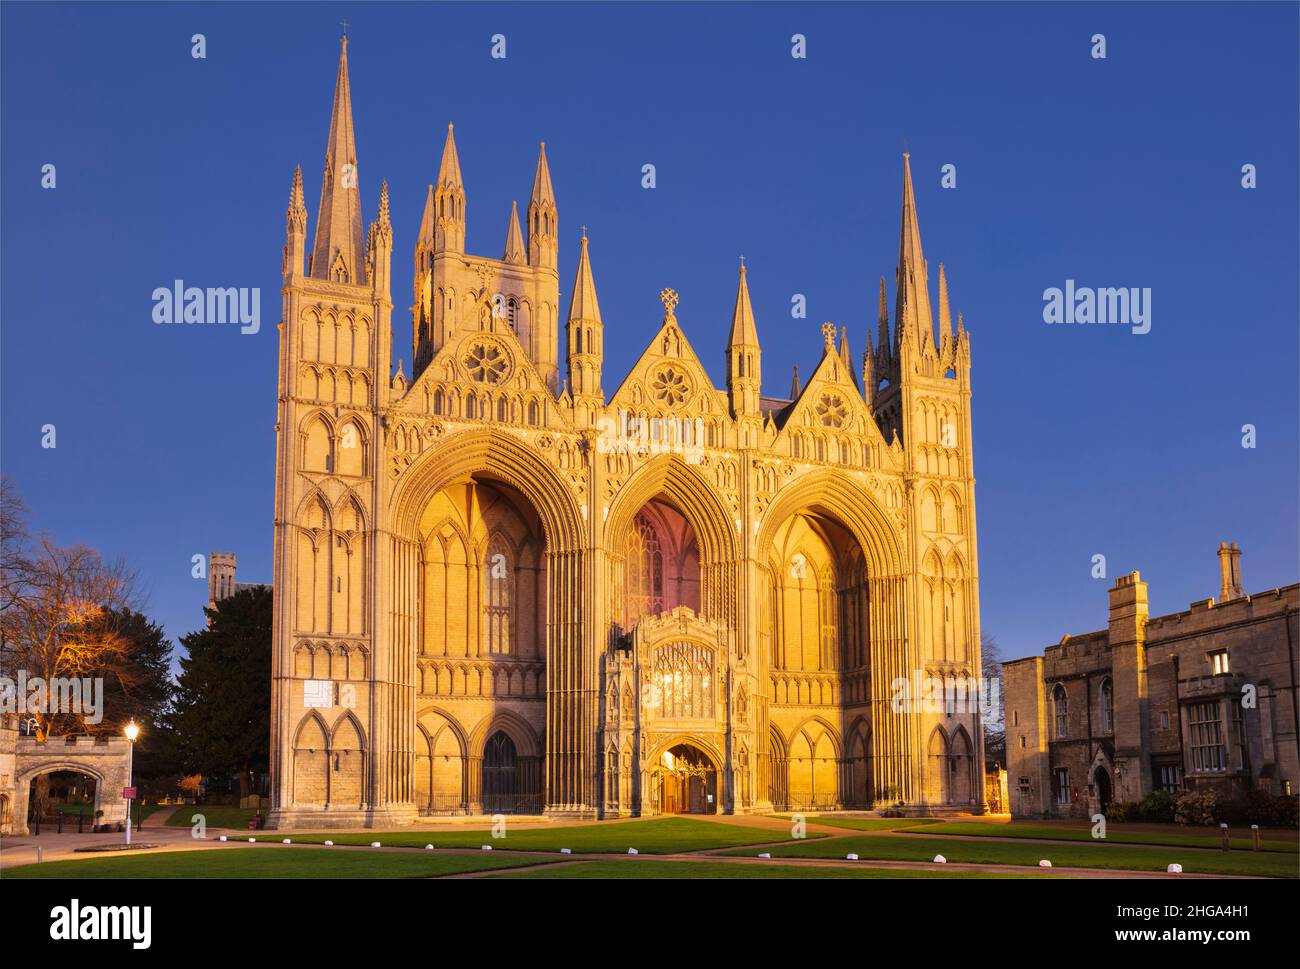 Cathédrale de Peterborough Cathédrale de Peterborough façade gothique de nuit Peterborough Cambridgeshire Angleterre GB Europe Banque D'Images